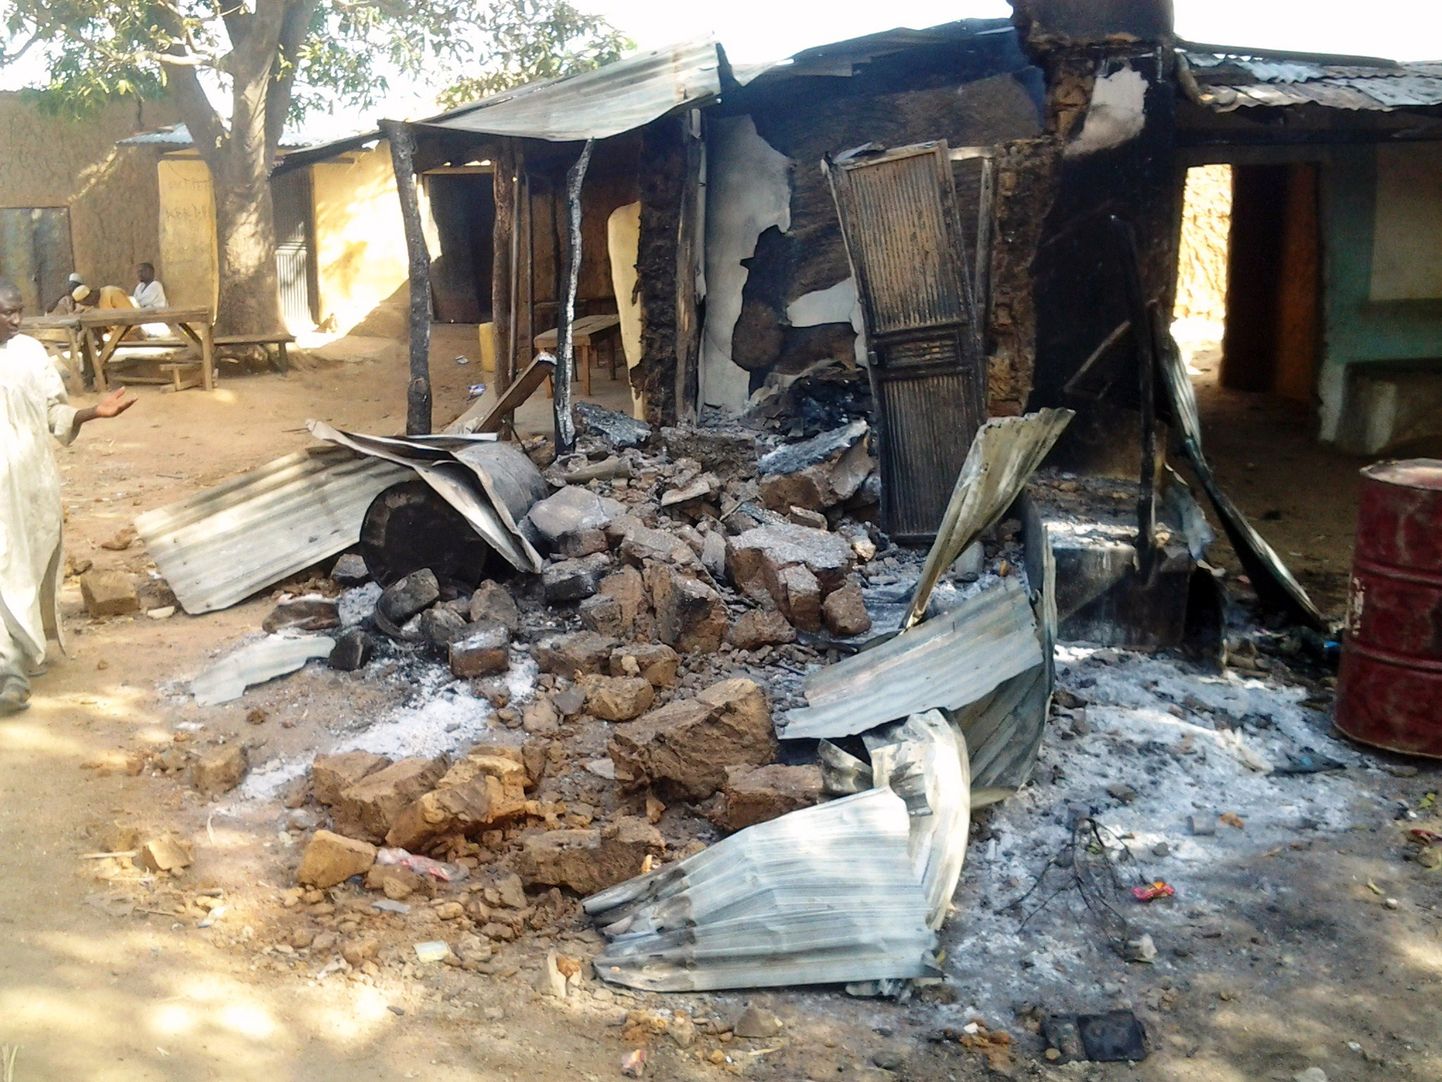 Põhja-Nigeerias Zamfara osariigis leidis 2013. aasta 18. juunil aset sarnane juhtum, kui karjavarastest jõugud ründasid varahommikul külasid, kus tapsid 48 inimest ning põletasid maha arvukalt eluasemeid.